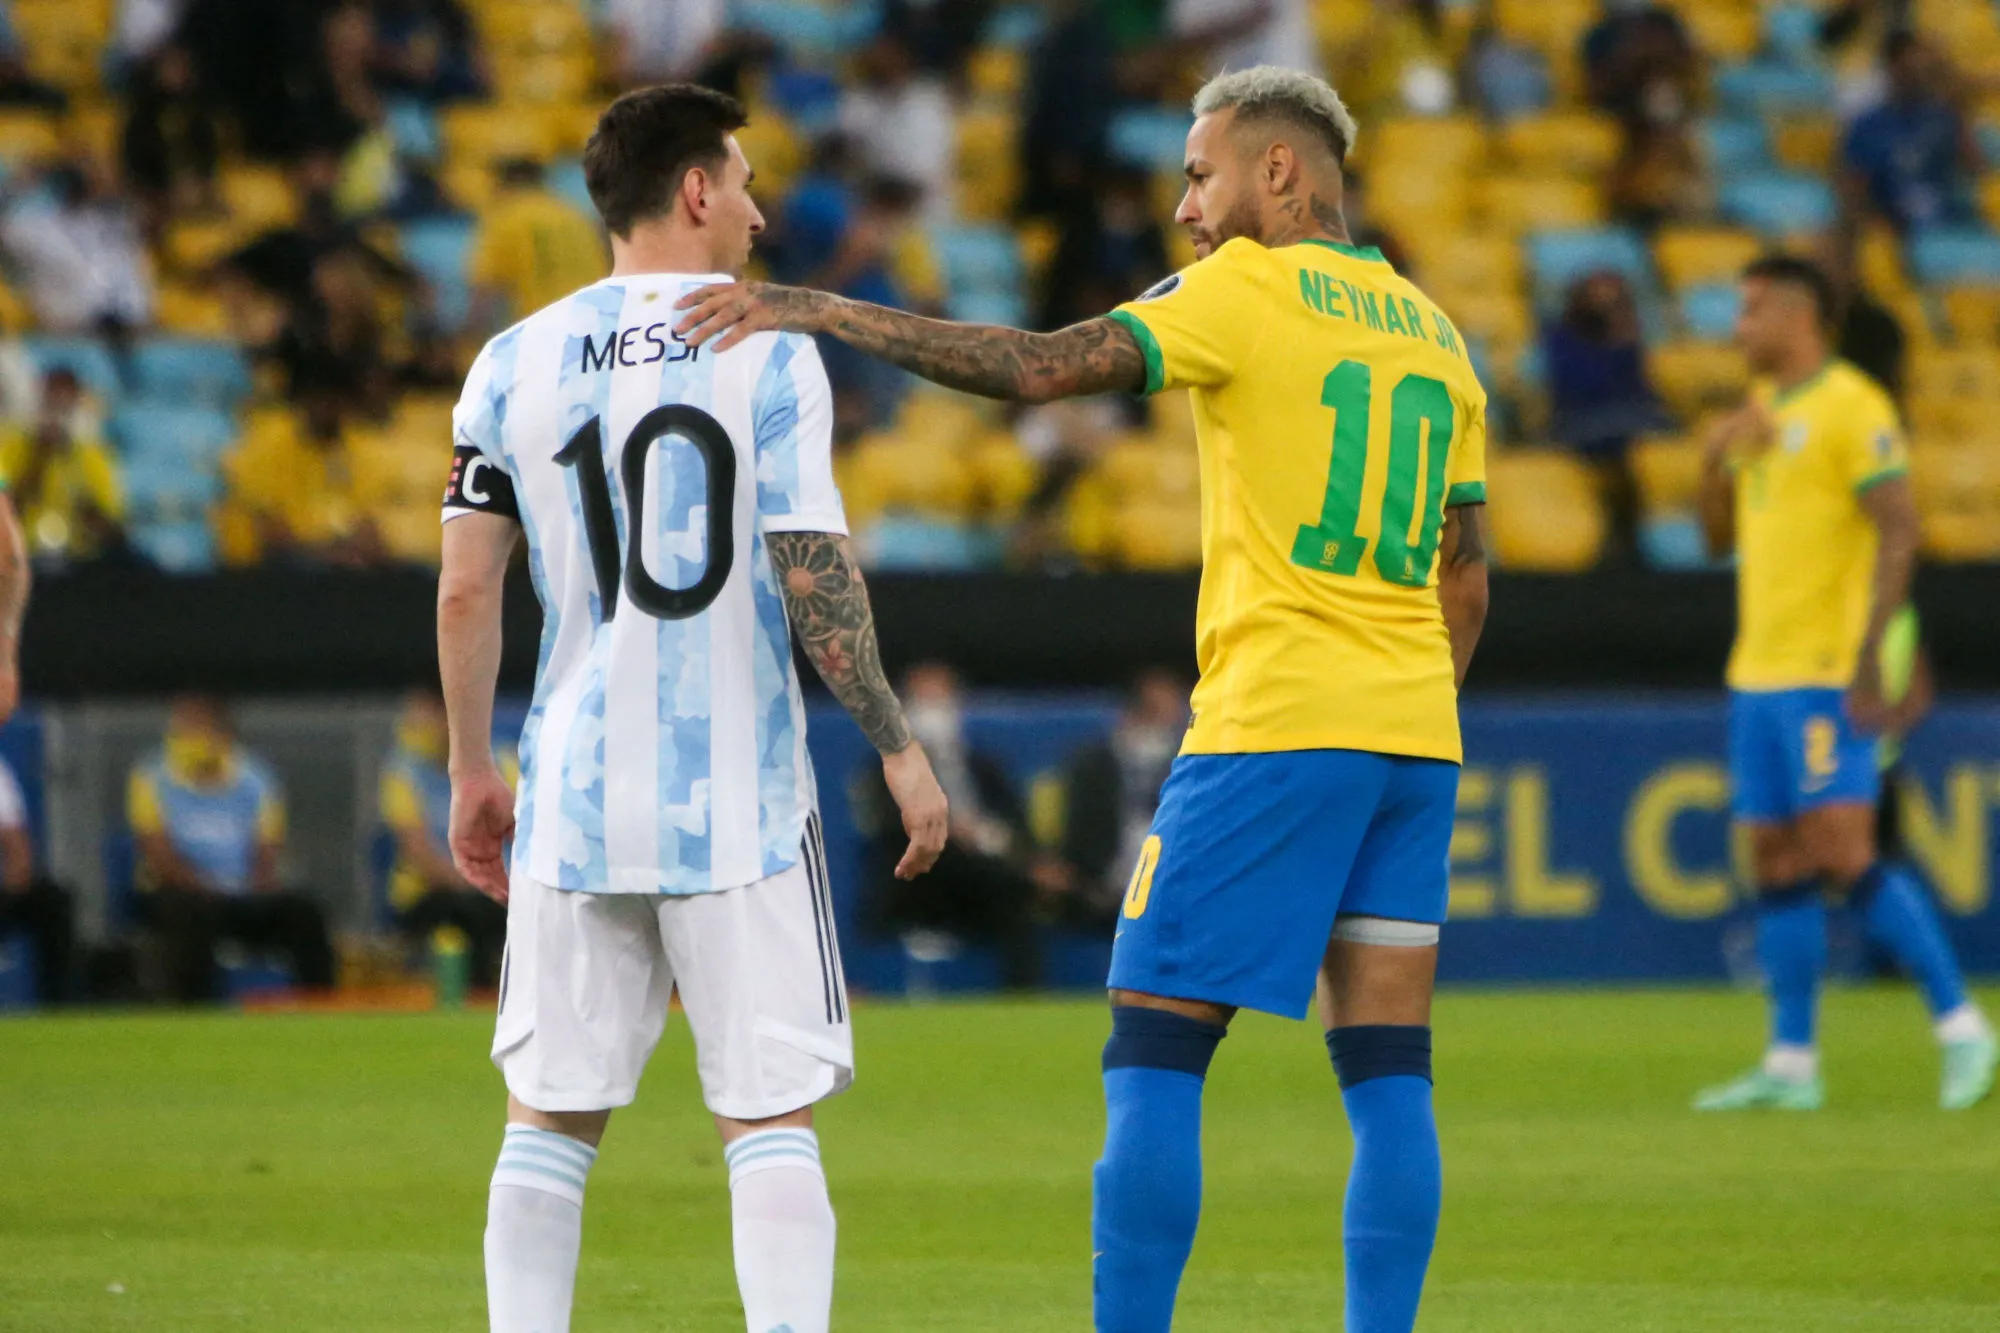 Pronostic Argentine Brésil : Analyse, cotes et prono du match des éliminatoires pour la Coupe du Monde 2022